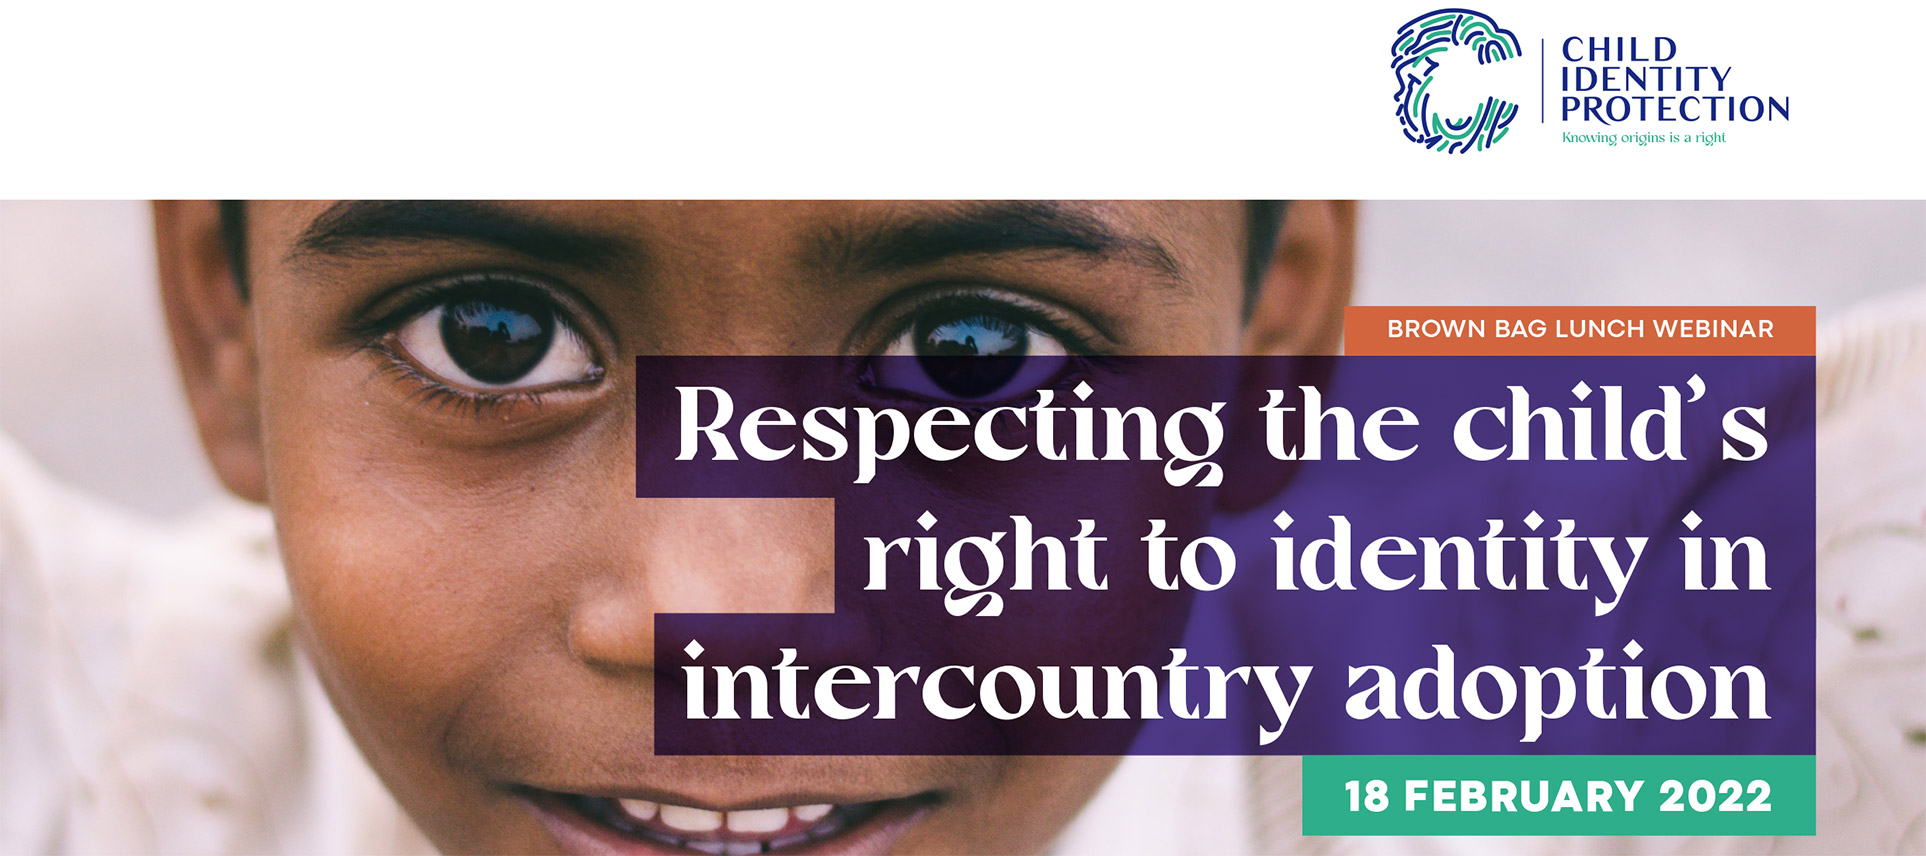 18 février 2022 Webinaire sur respecter le droit à l'identité de l'enfant dans l'adoption internationale